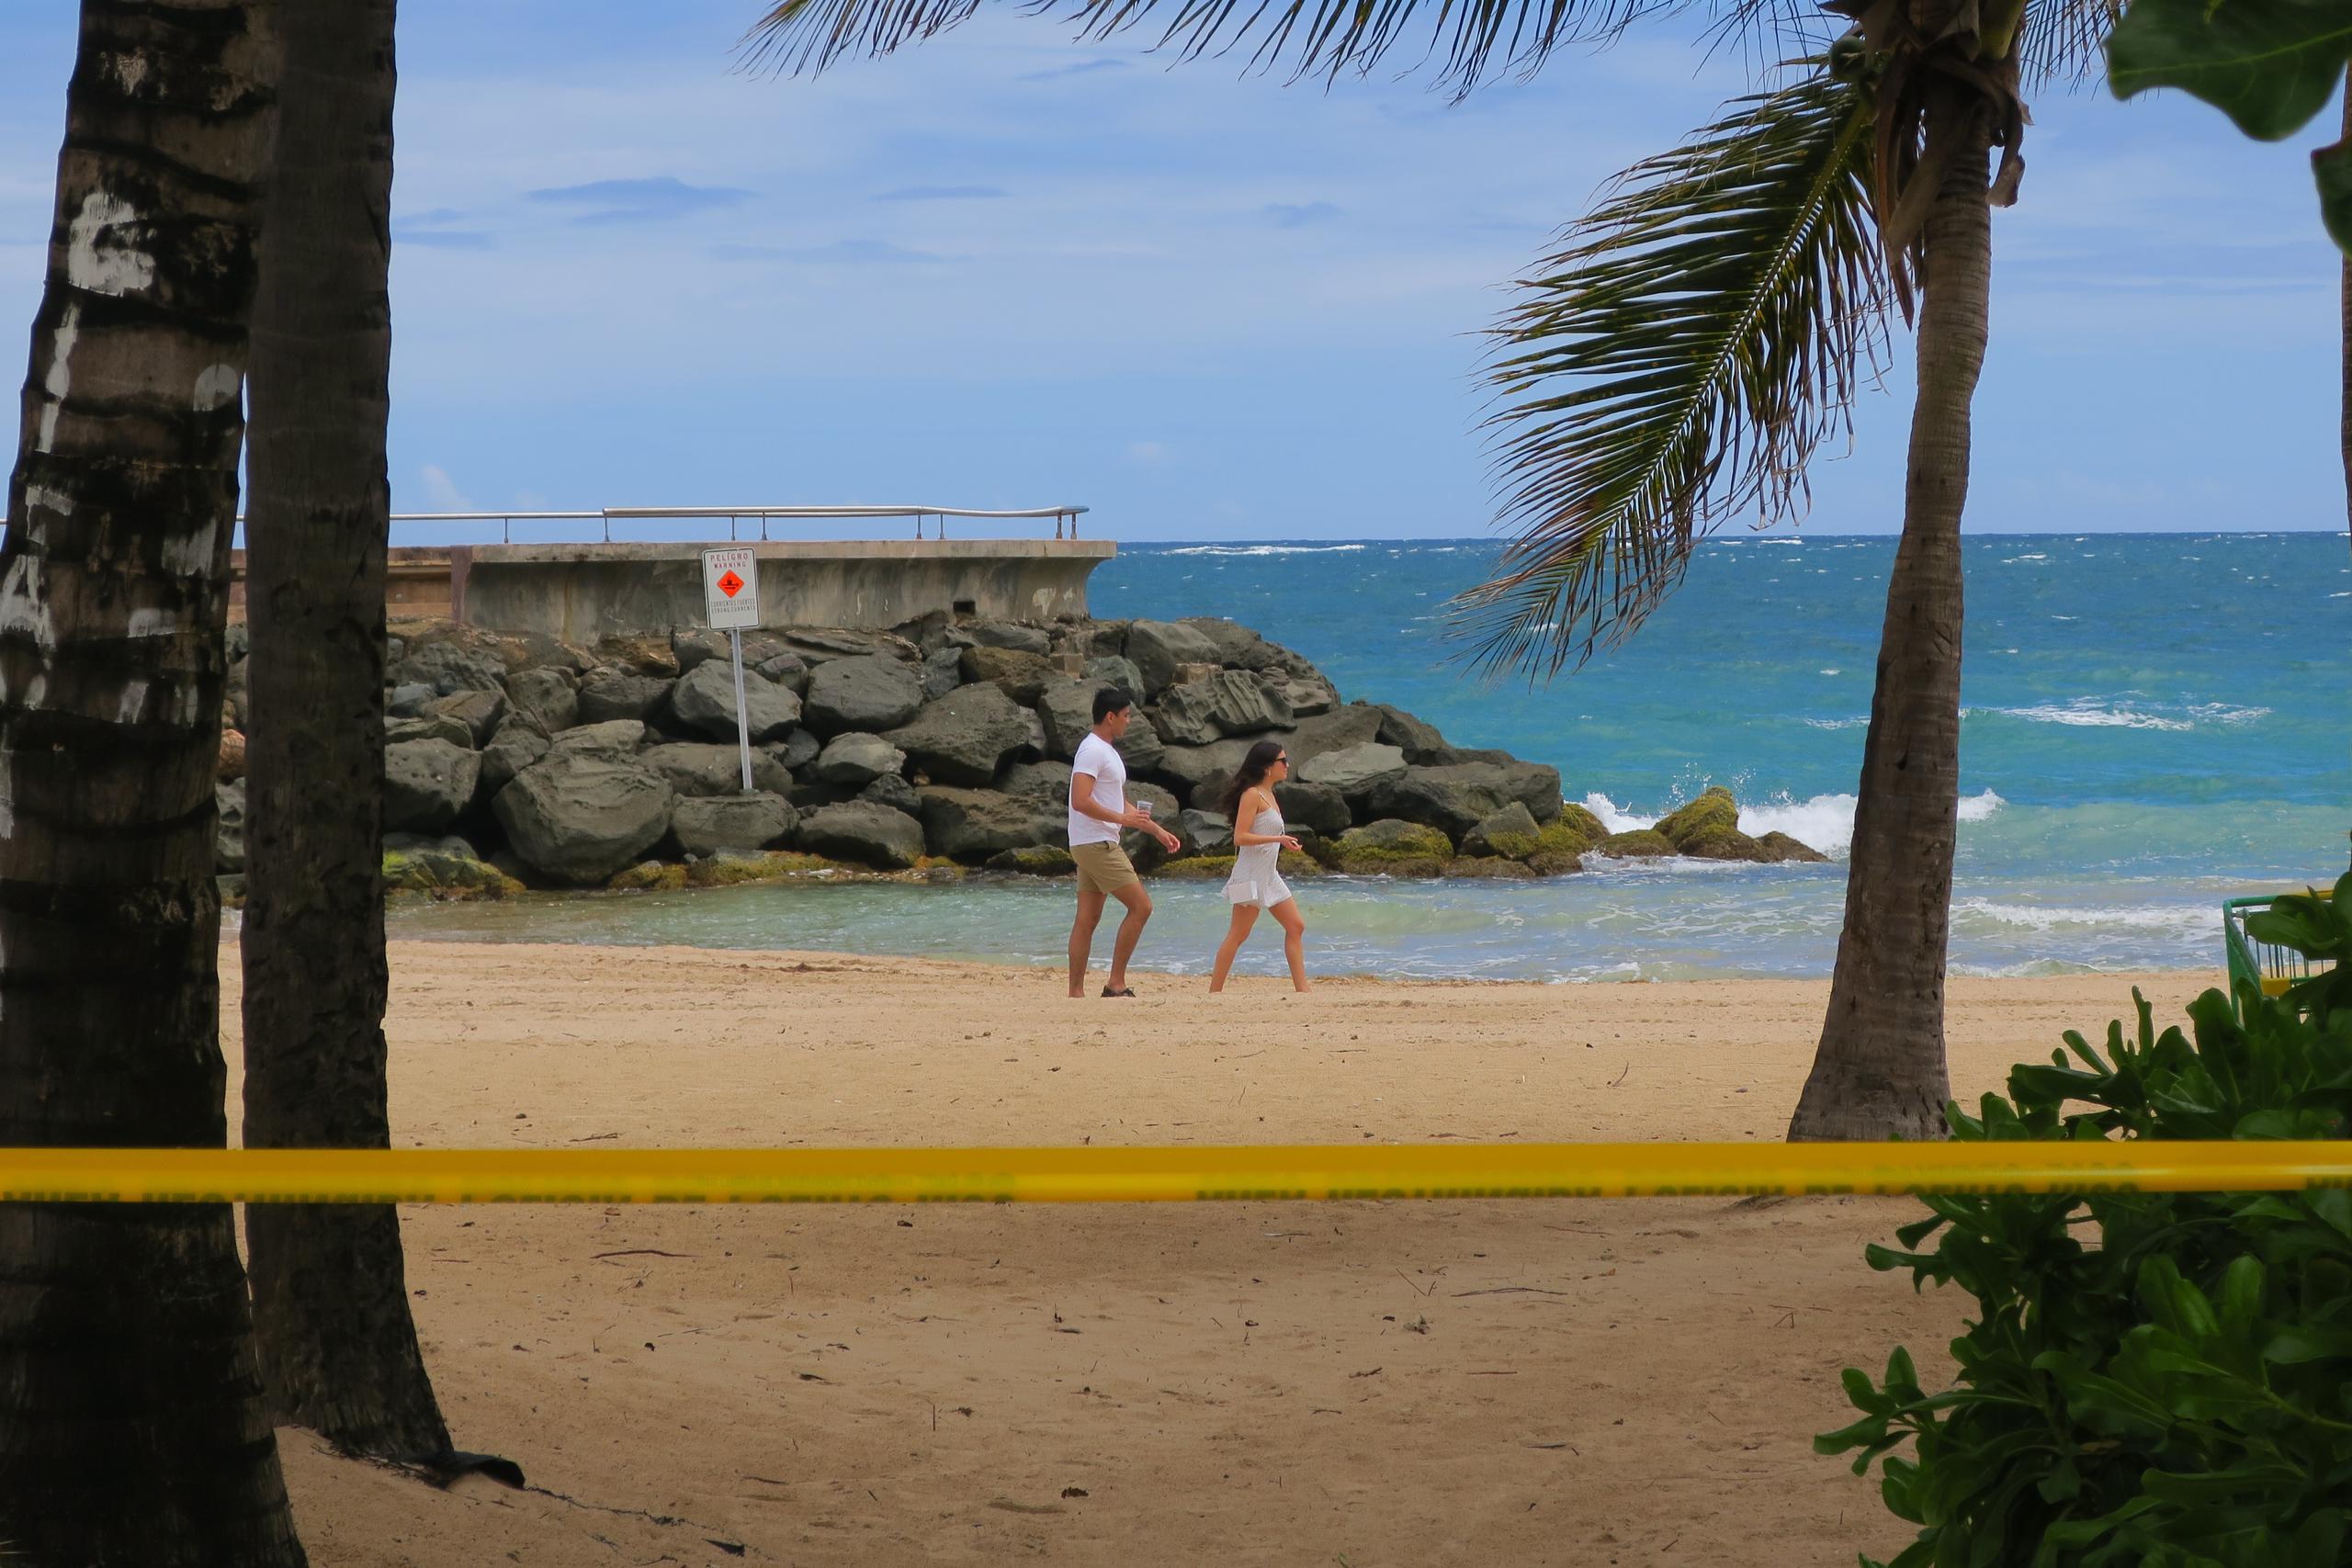 Una pareja camina por la playa pese a la cinta de aviso de "Área restringida" por el sector de Condado en San Juan